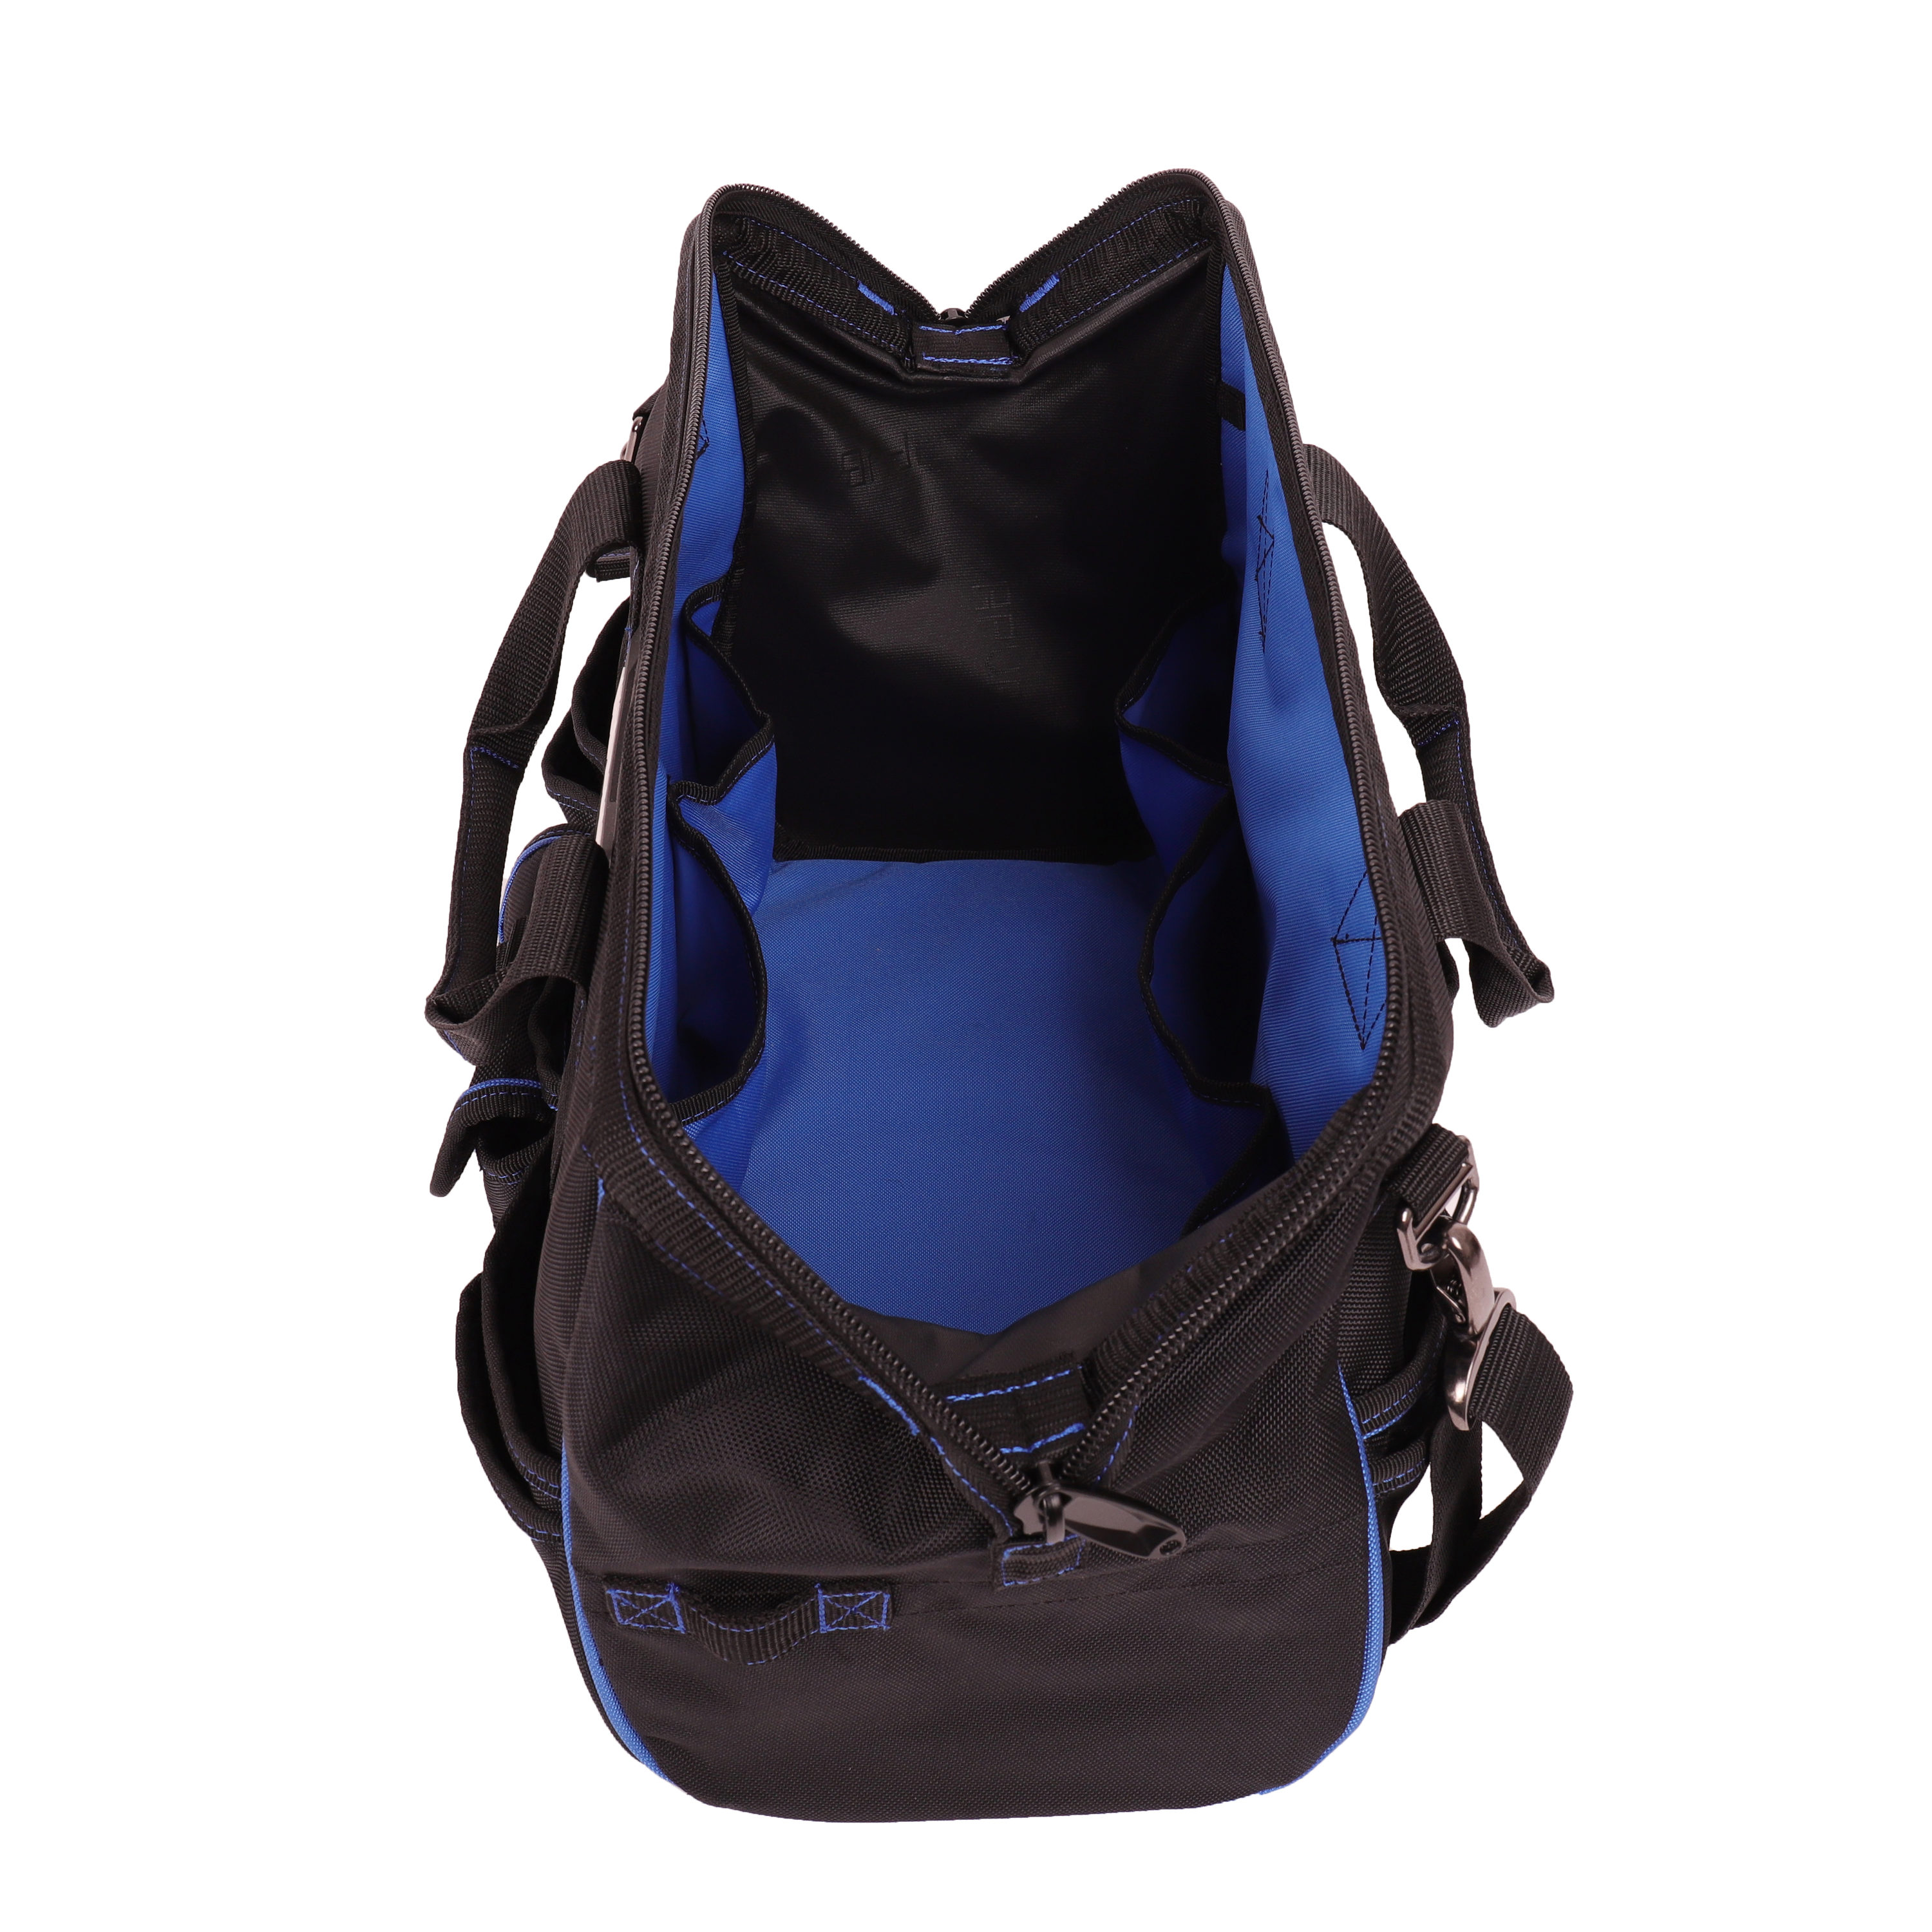 Kobalt Blue Black Polyester 16-in Zippered Cargo Bag at Lowes.com